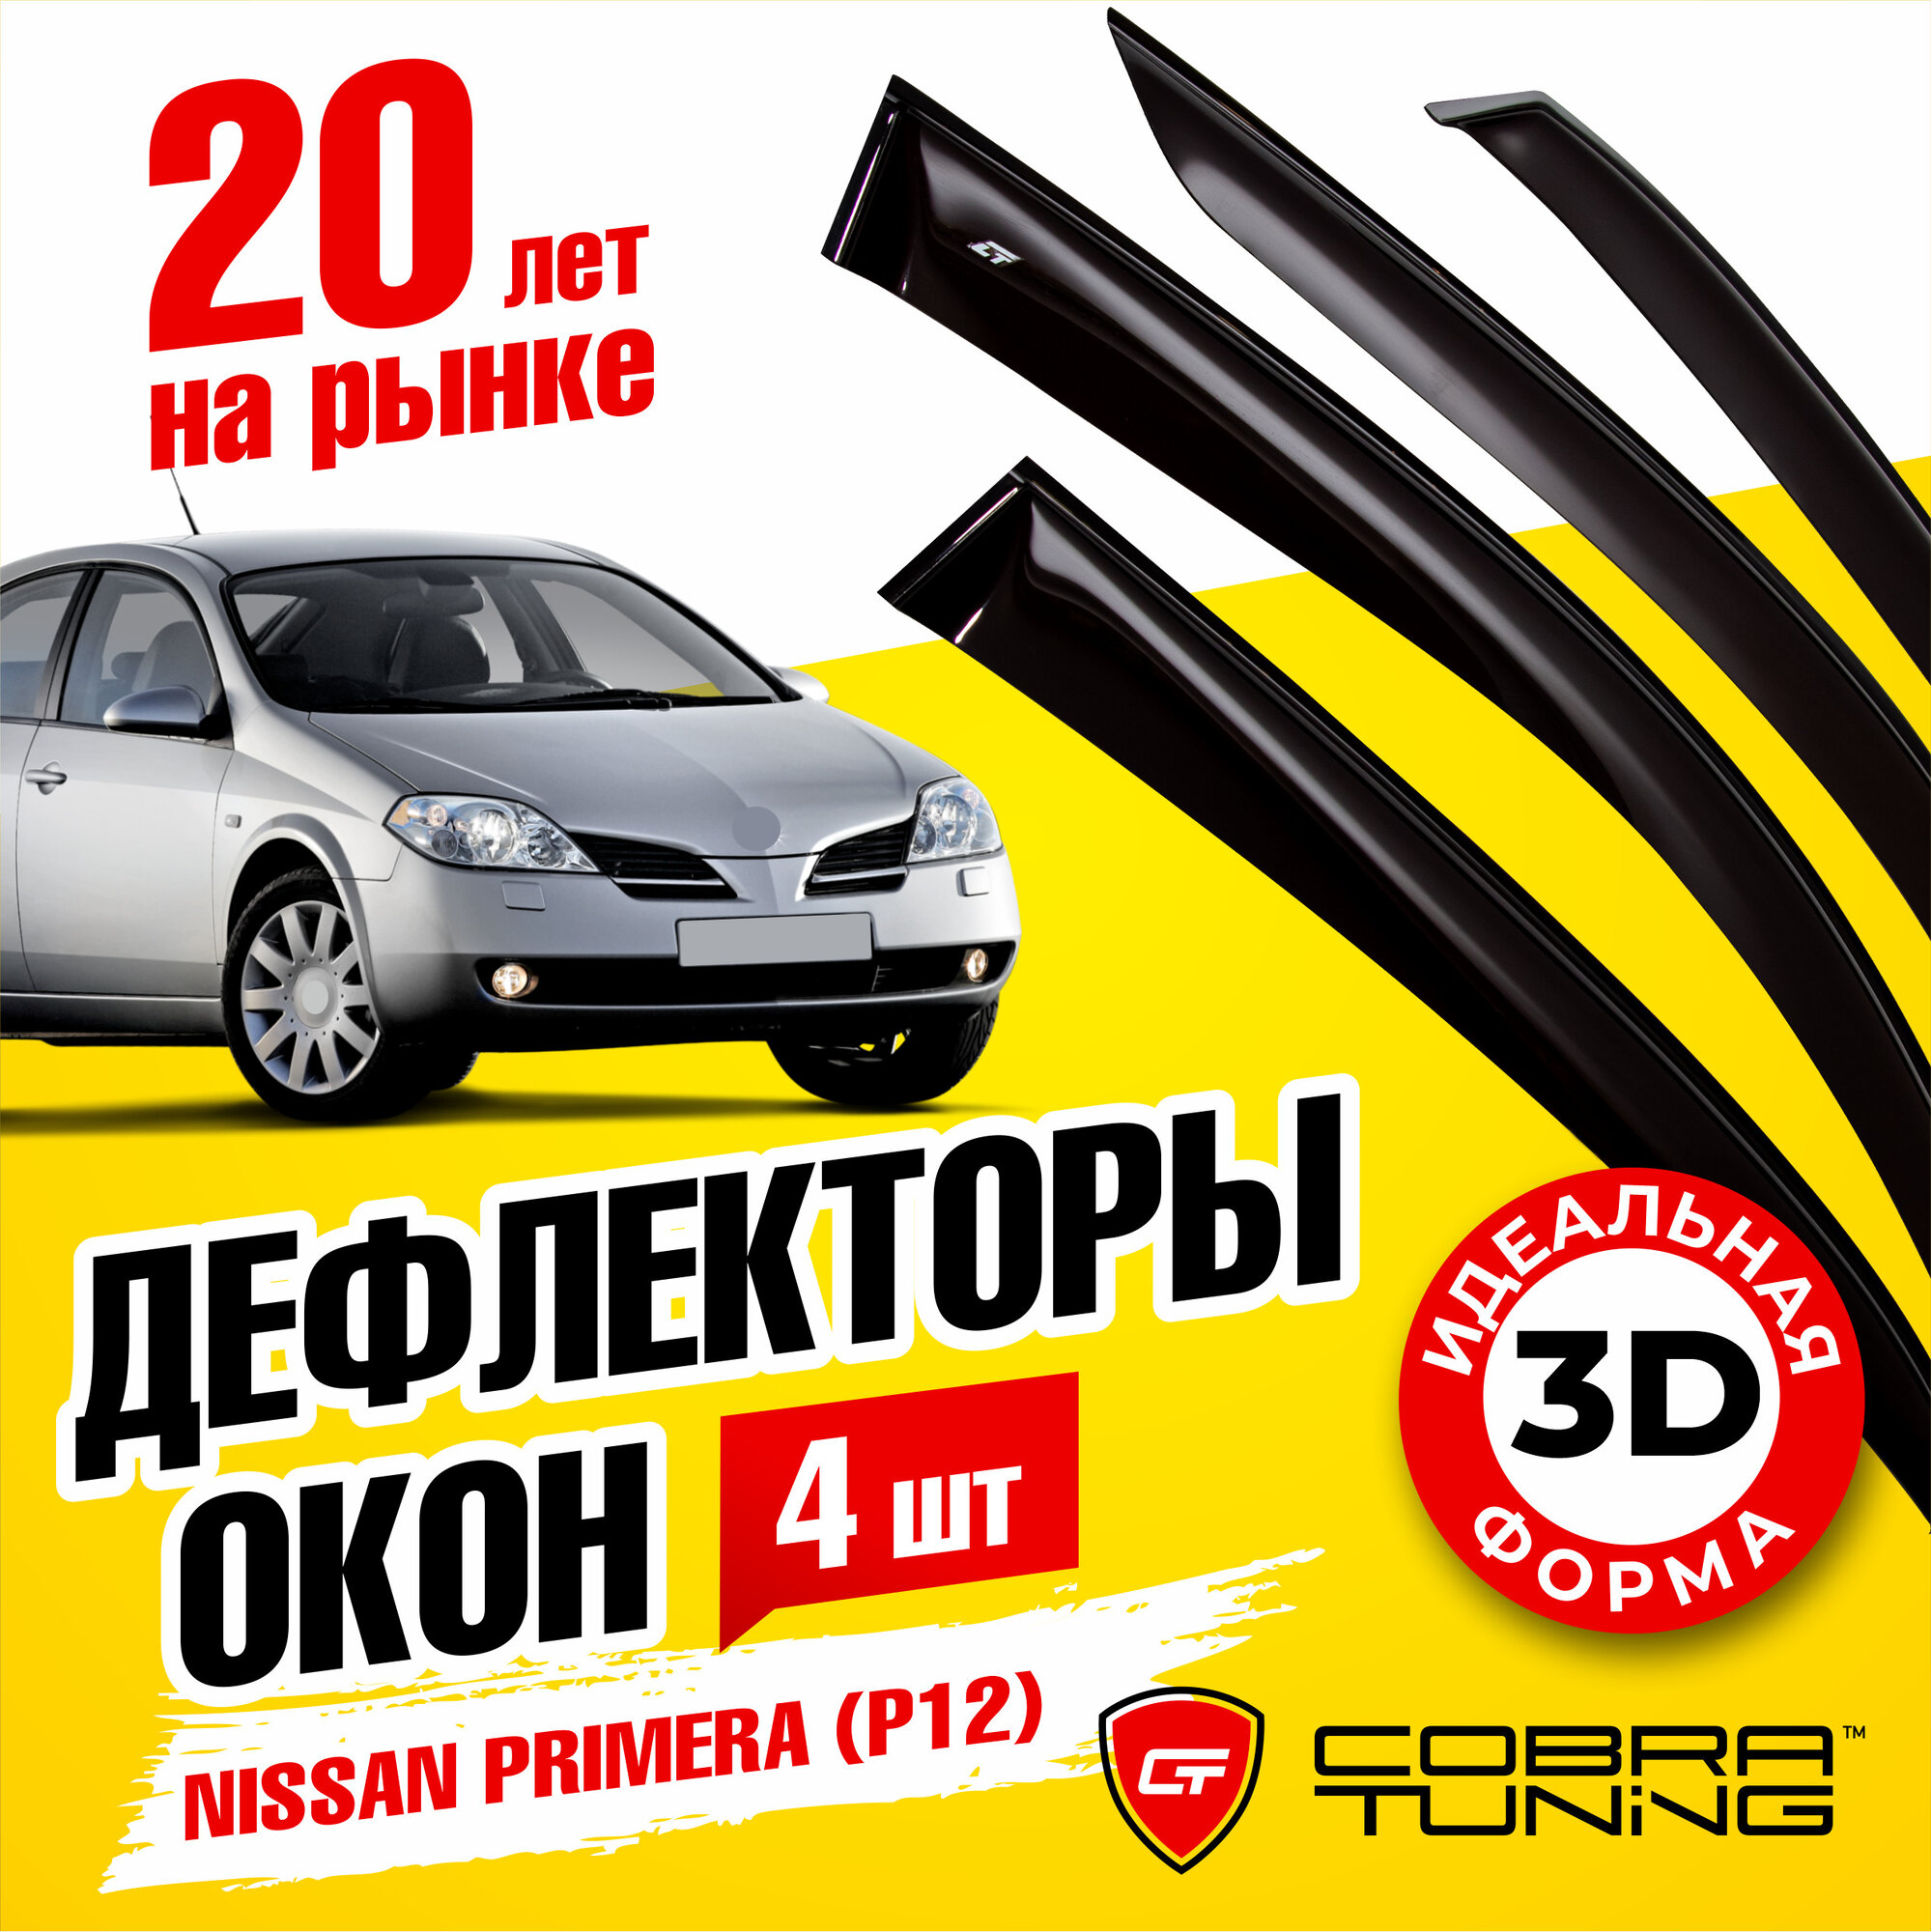 Дефлекторы боковых окон для Nissan Primera (Ниссан Примера) седан, лифтбек (P12) 2002-2008, ветровики на двери автомобиля, Cobra Tuning